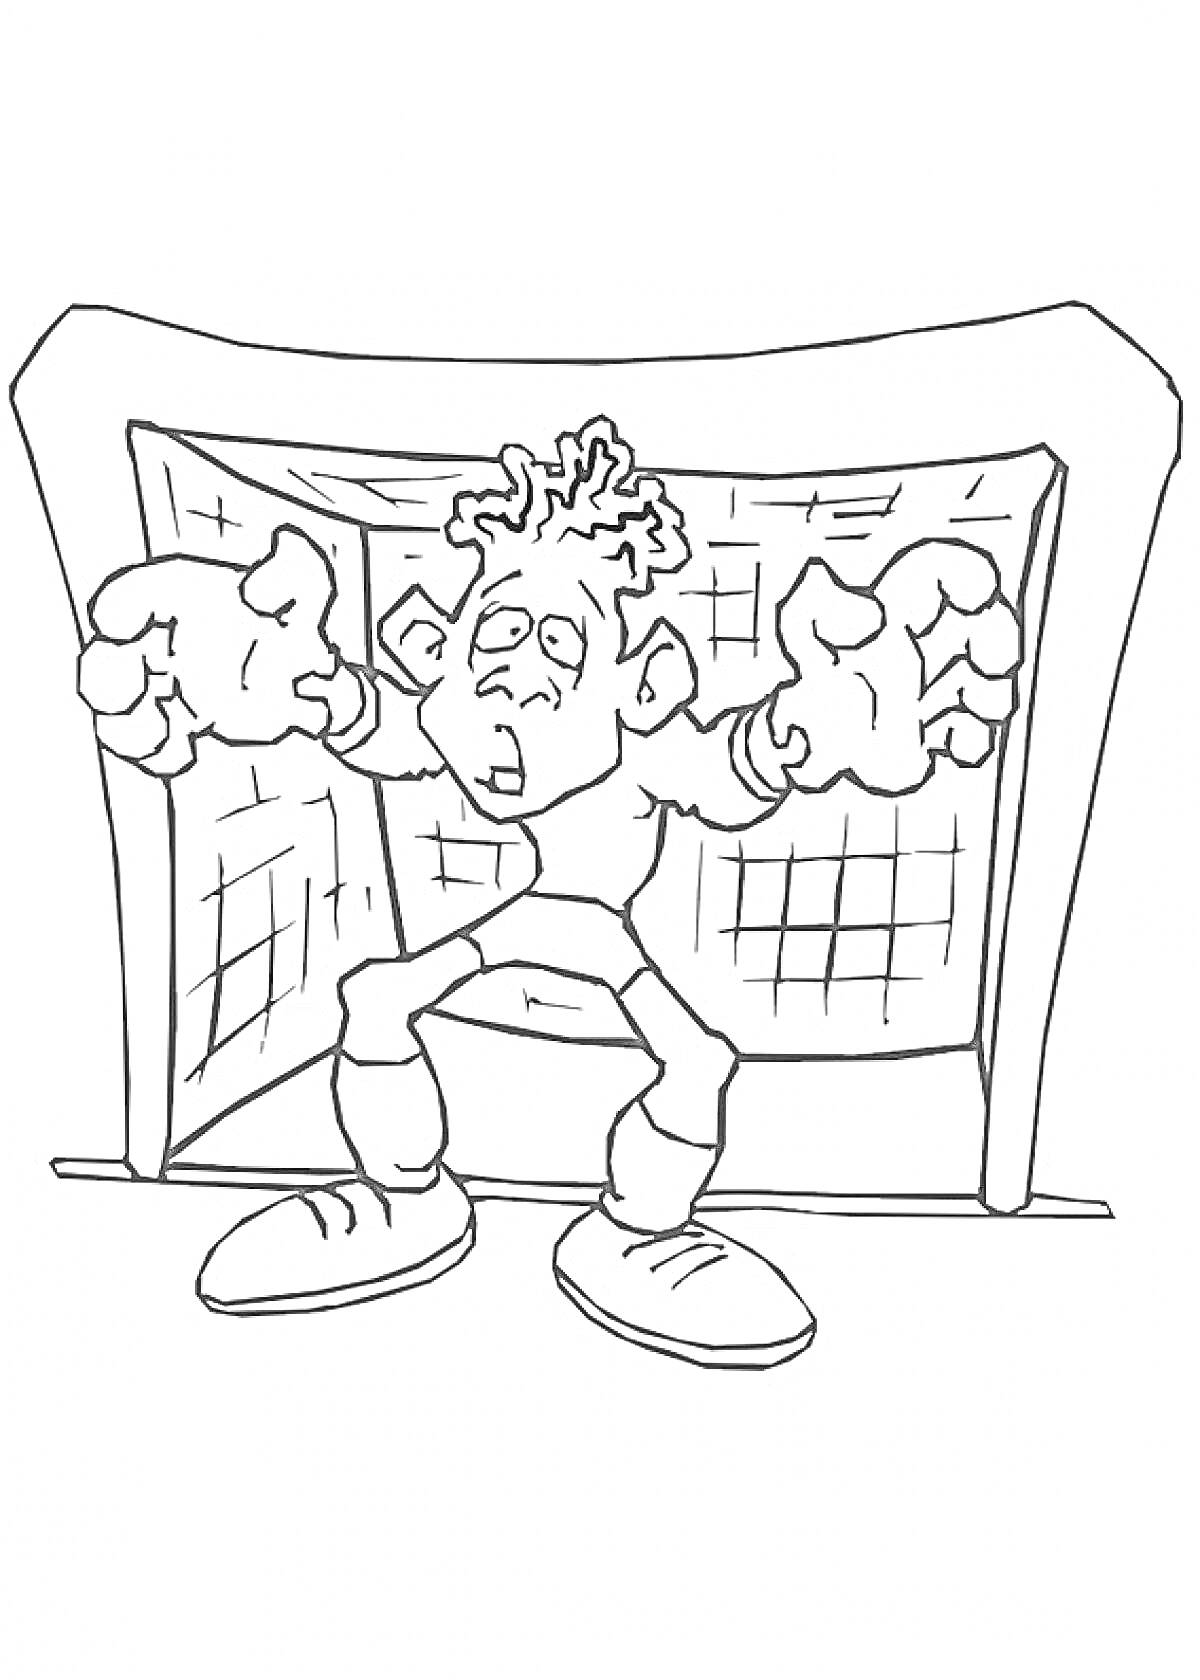 Раскраска Вратарь в футбольных воротах с растопыренными руками